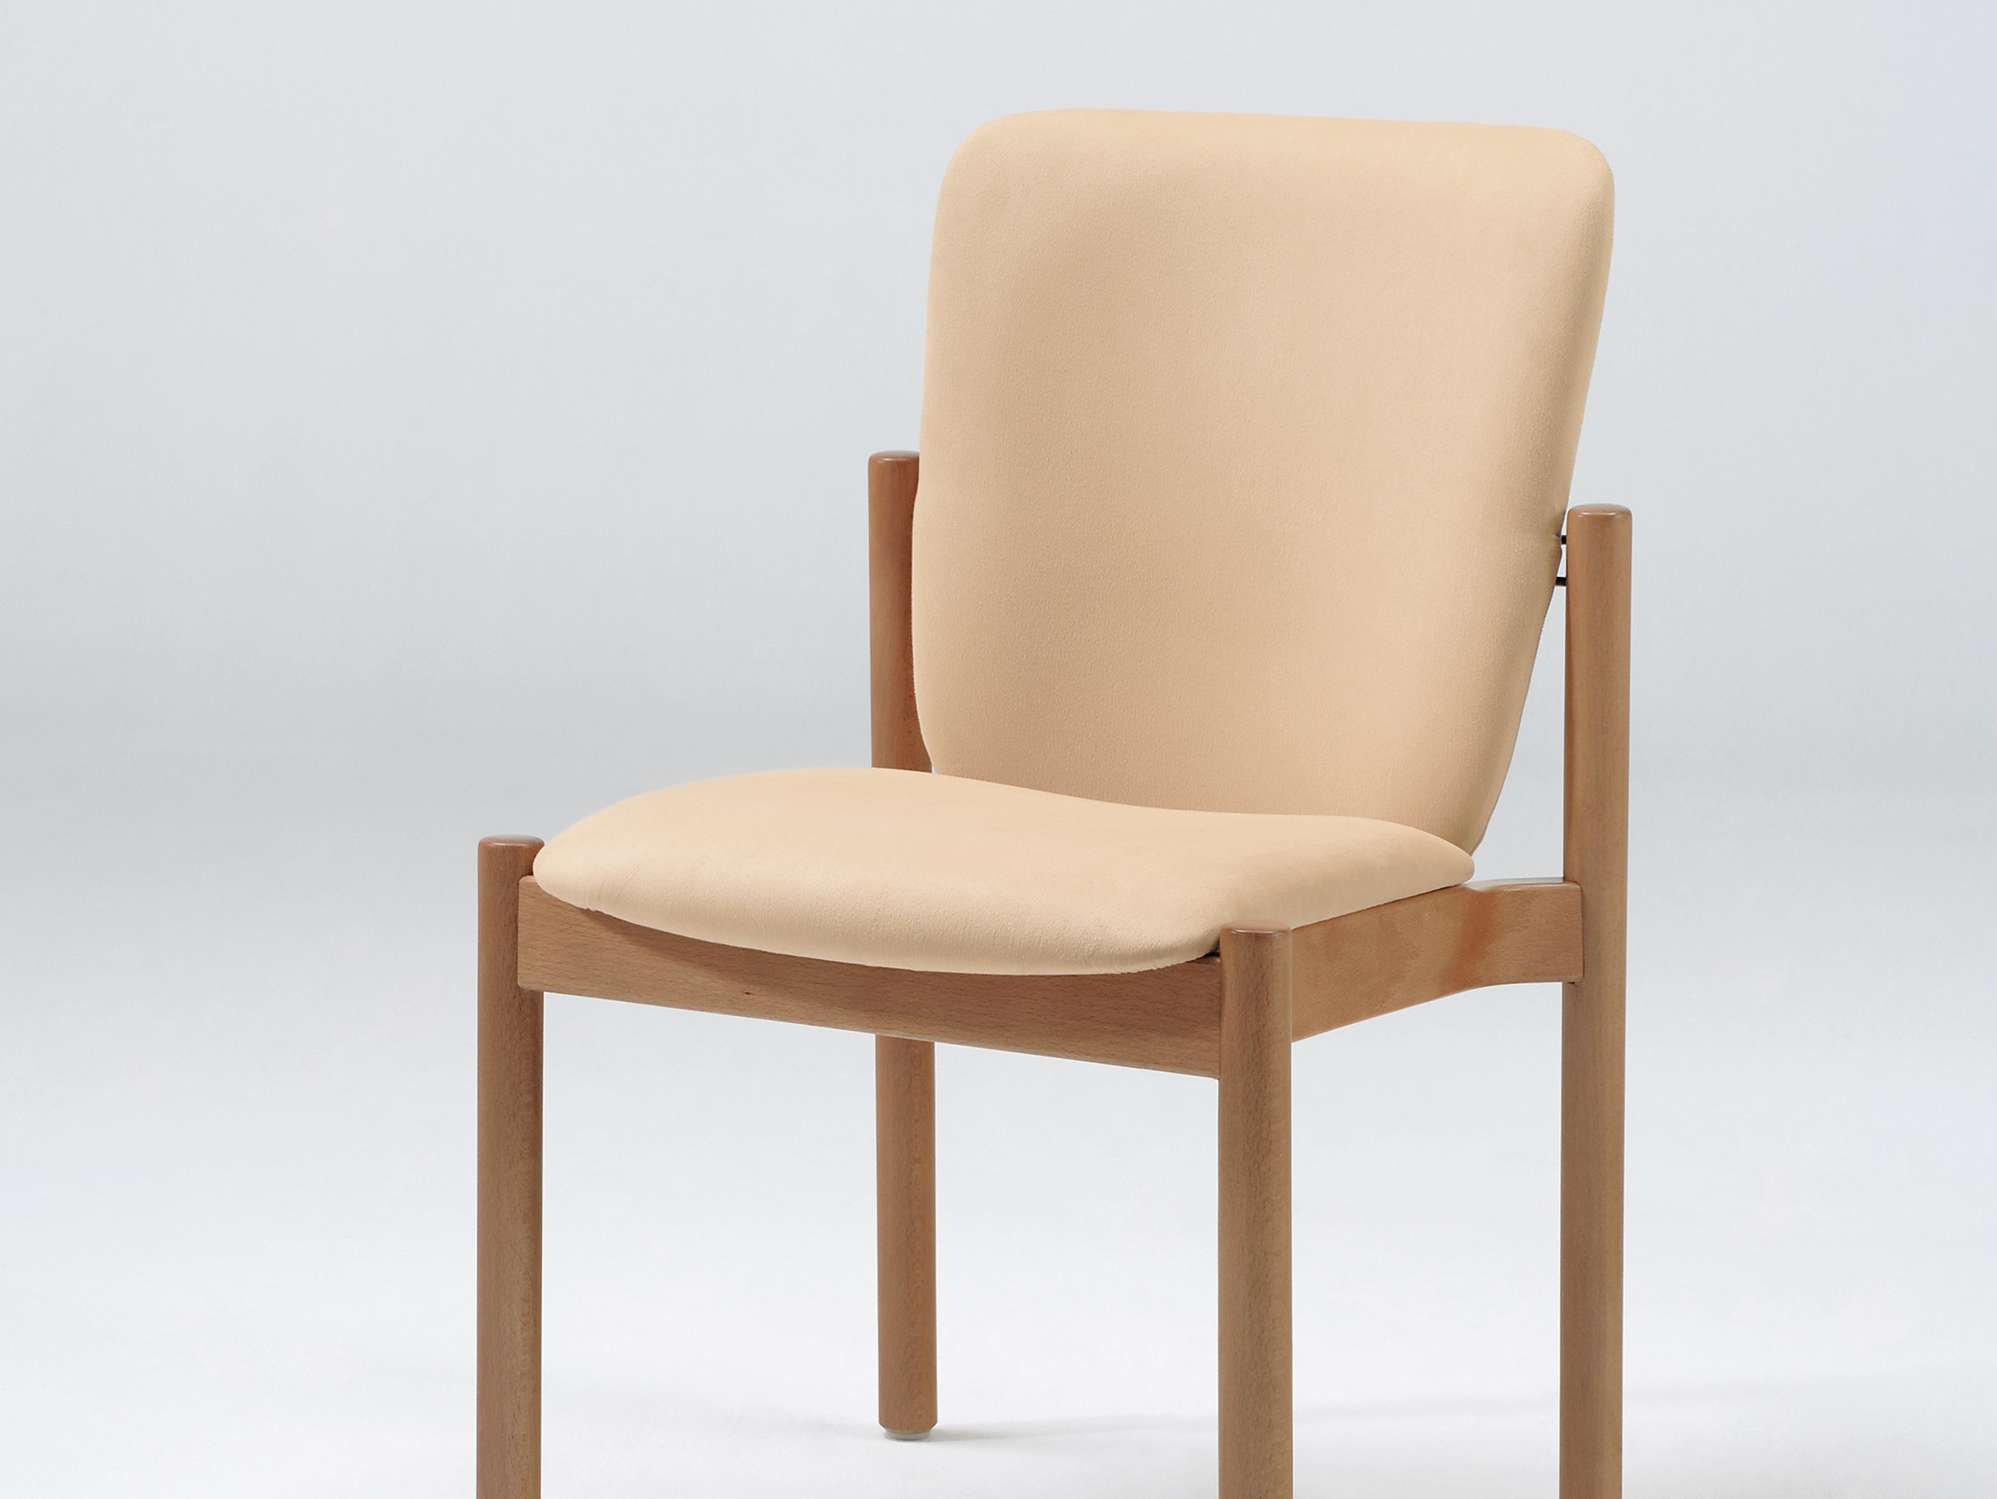 Optimo-tuoli päällekkäin pinottavana mallina, ilman nostokahvaa